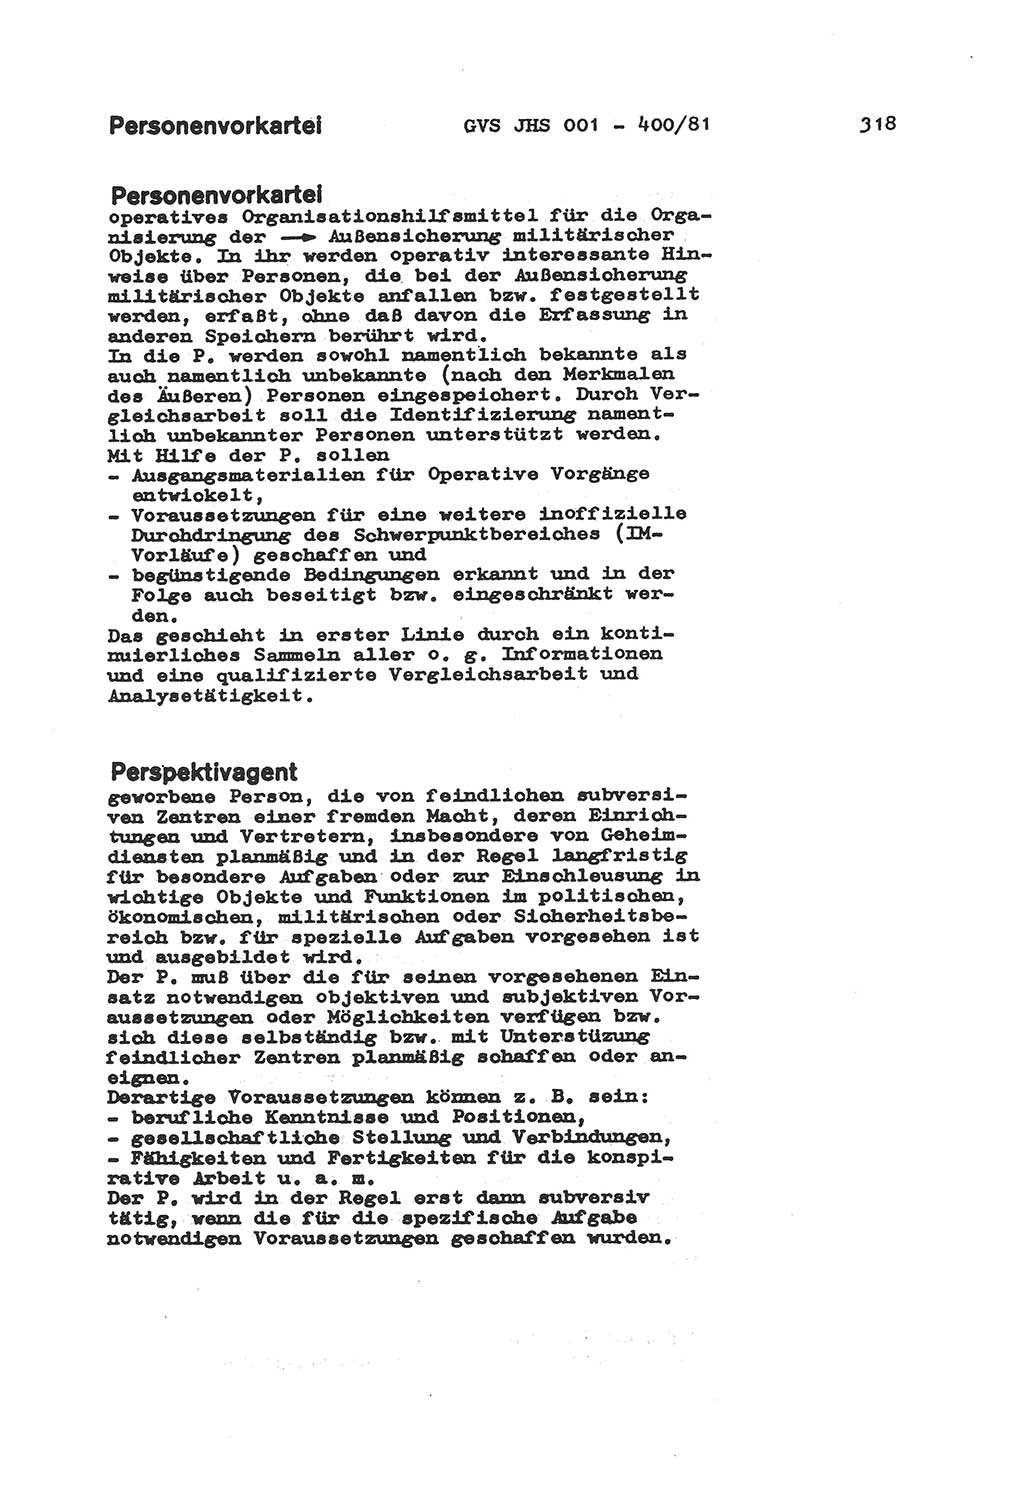 Wörterbuch der politisch-operativen Arbeit, Ministerium für Staatssicherheit (MfS) [Deutsche Demokratische Republik (DDR)], Juristische Hochschule (JHS), Geheime Verschlußsache (GVS) o001-400/81, Potsdam 1985, Blatt 318 (Wb. pol.-op. Arb. MfS DDR JHS GVS o001-400/81 1985, Bl. 318)